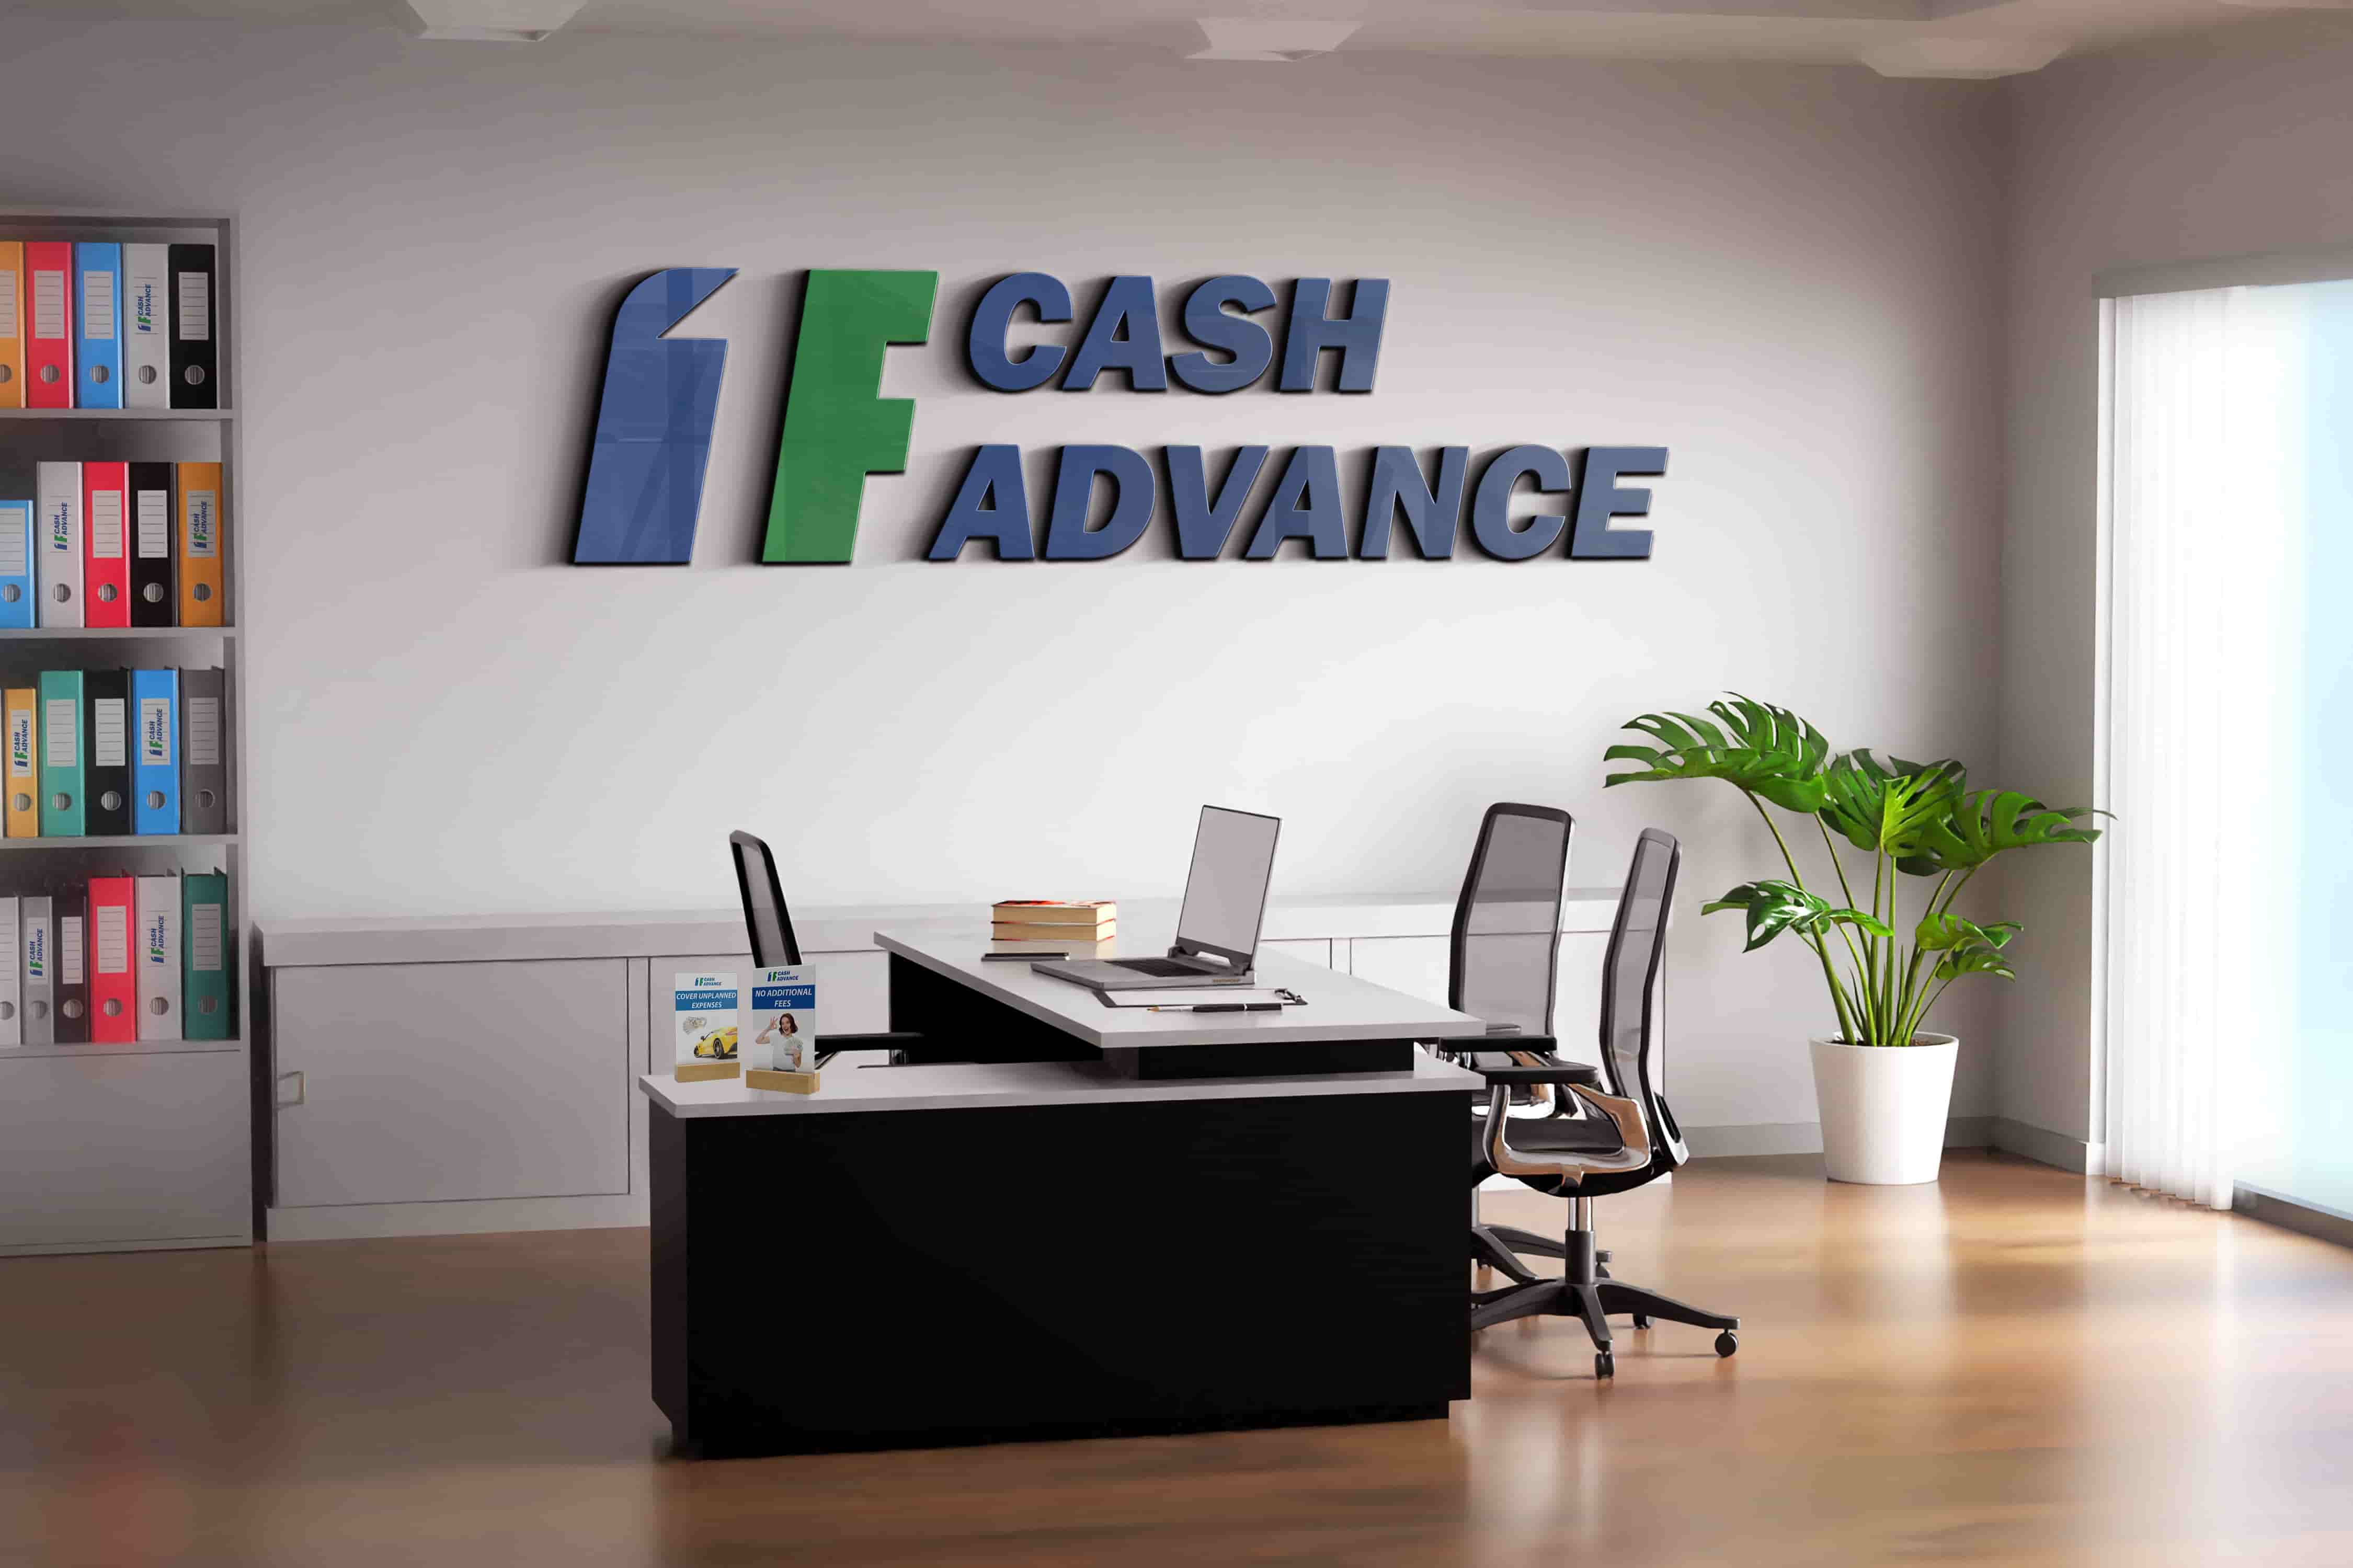 Cash advance in Boston, MA